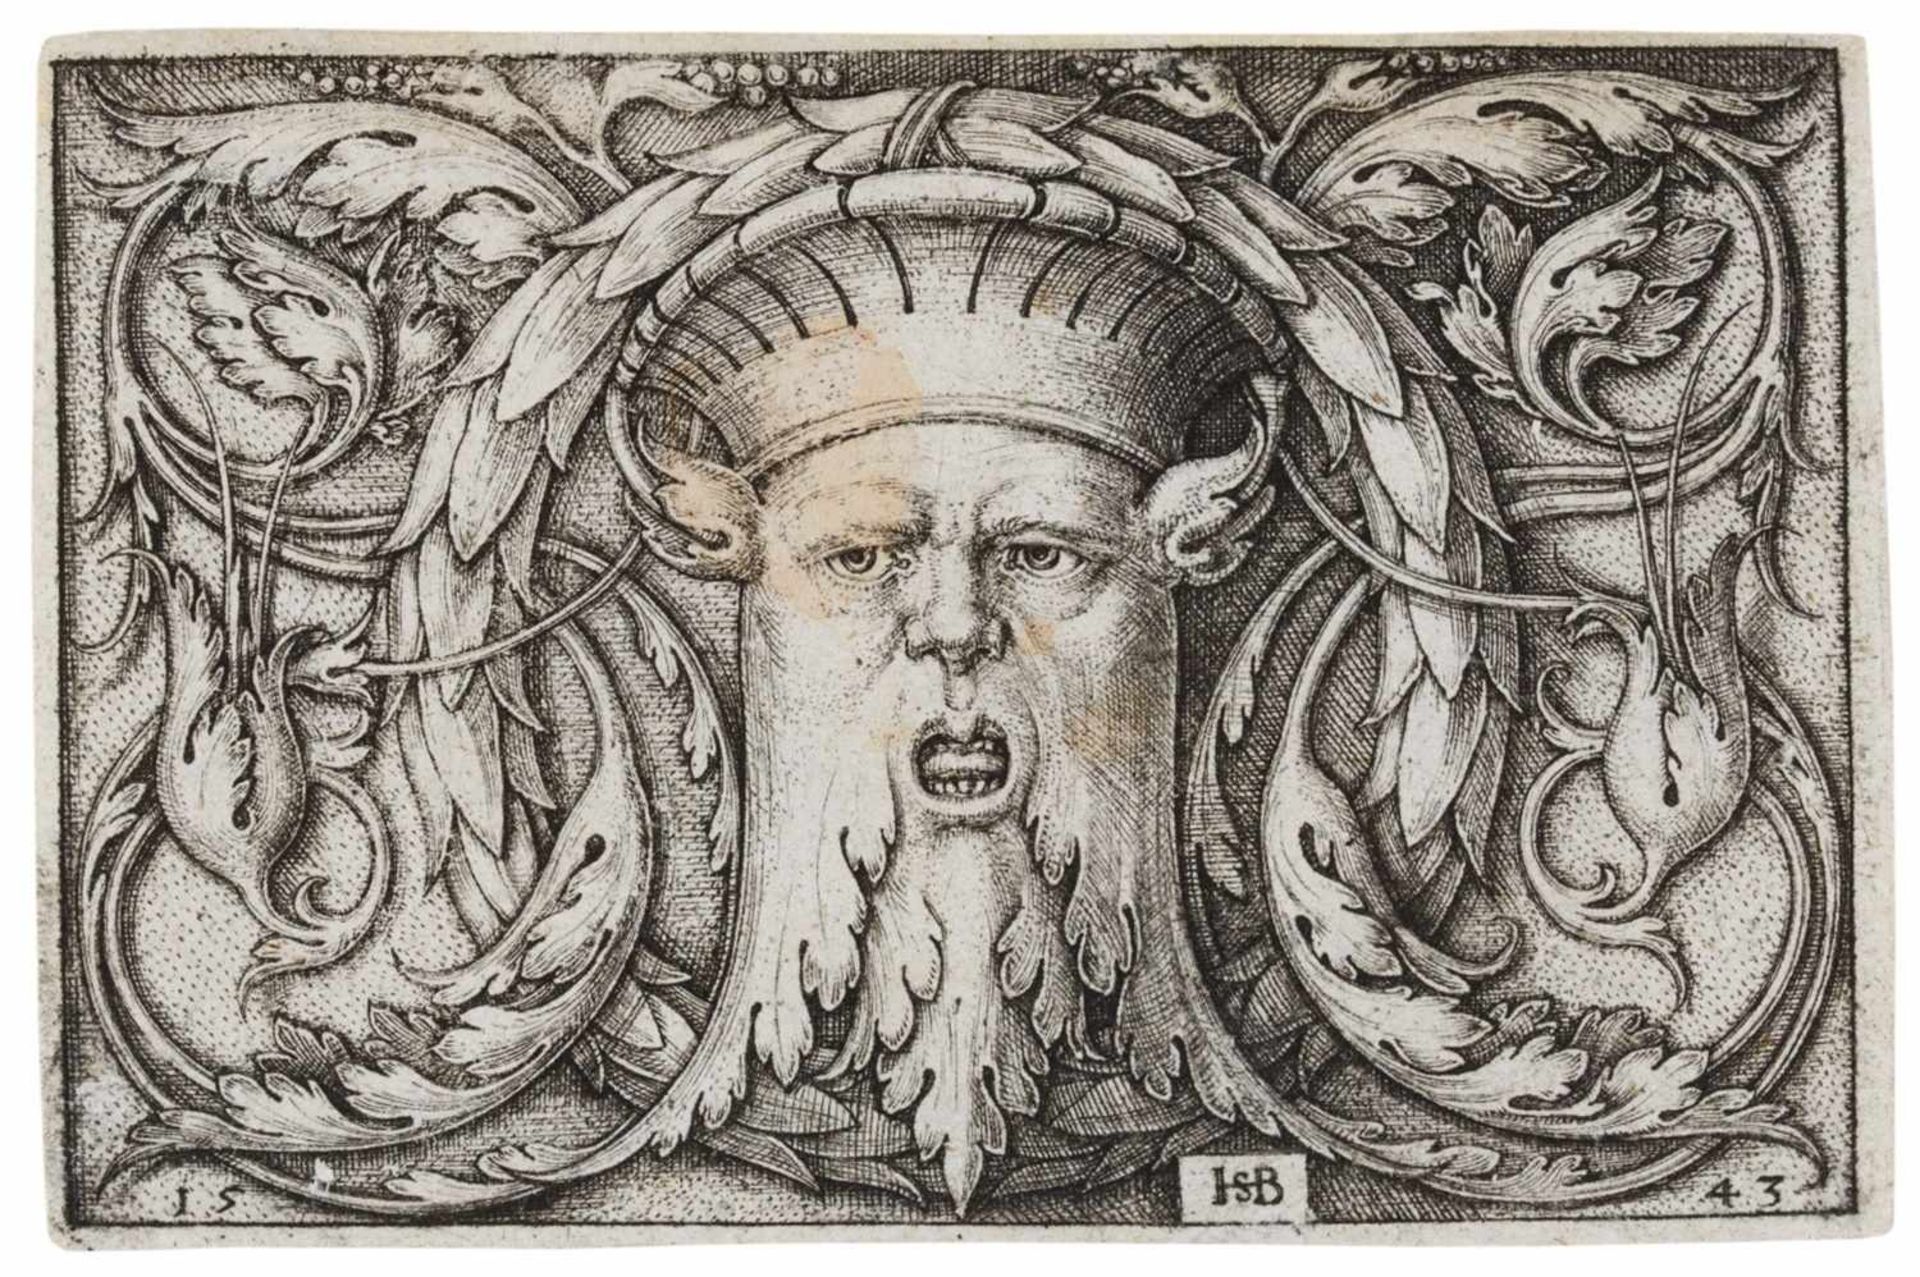 HANS SEBALD BEHAMNürnberg 1500 - 1550 Frankfurt a.M.Querfüllung mit der Maske. 1543. Kupferstich auf